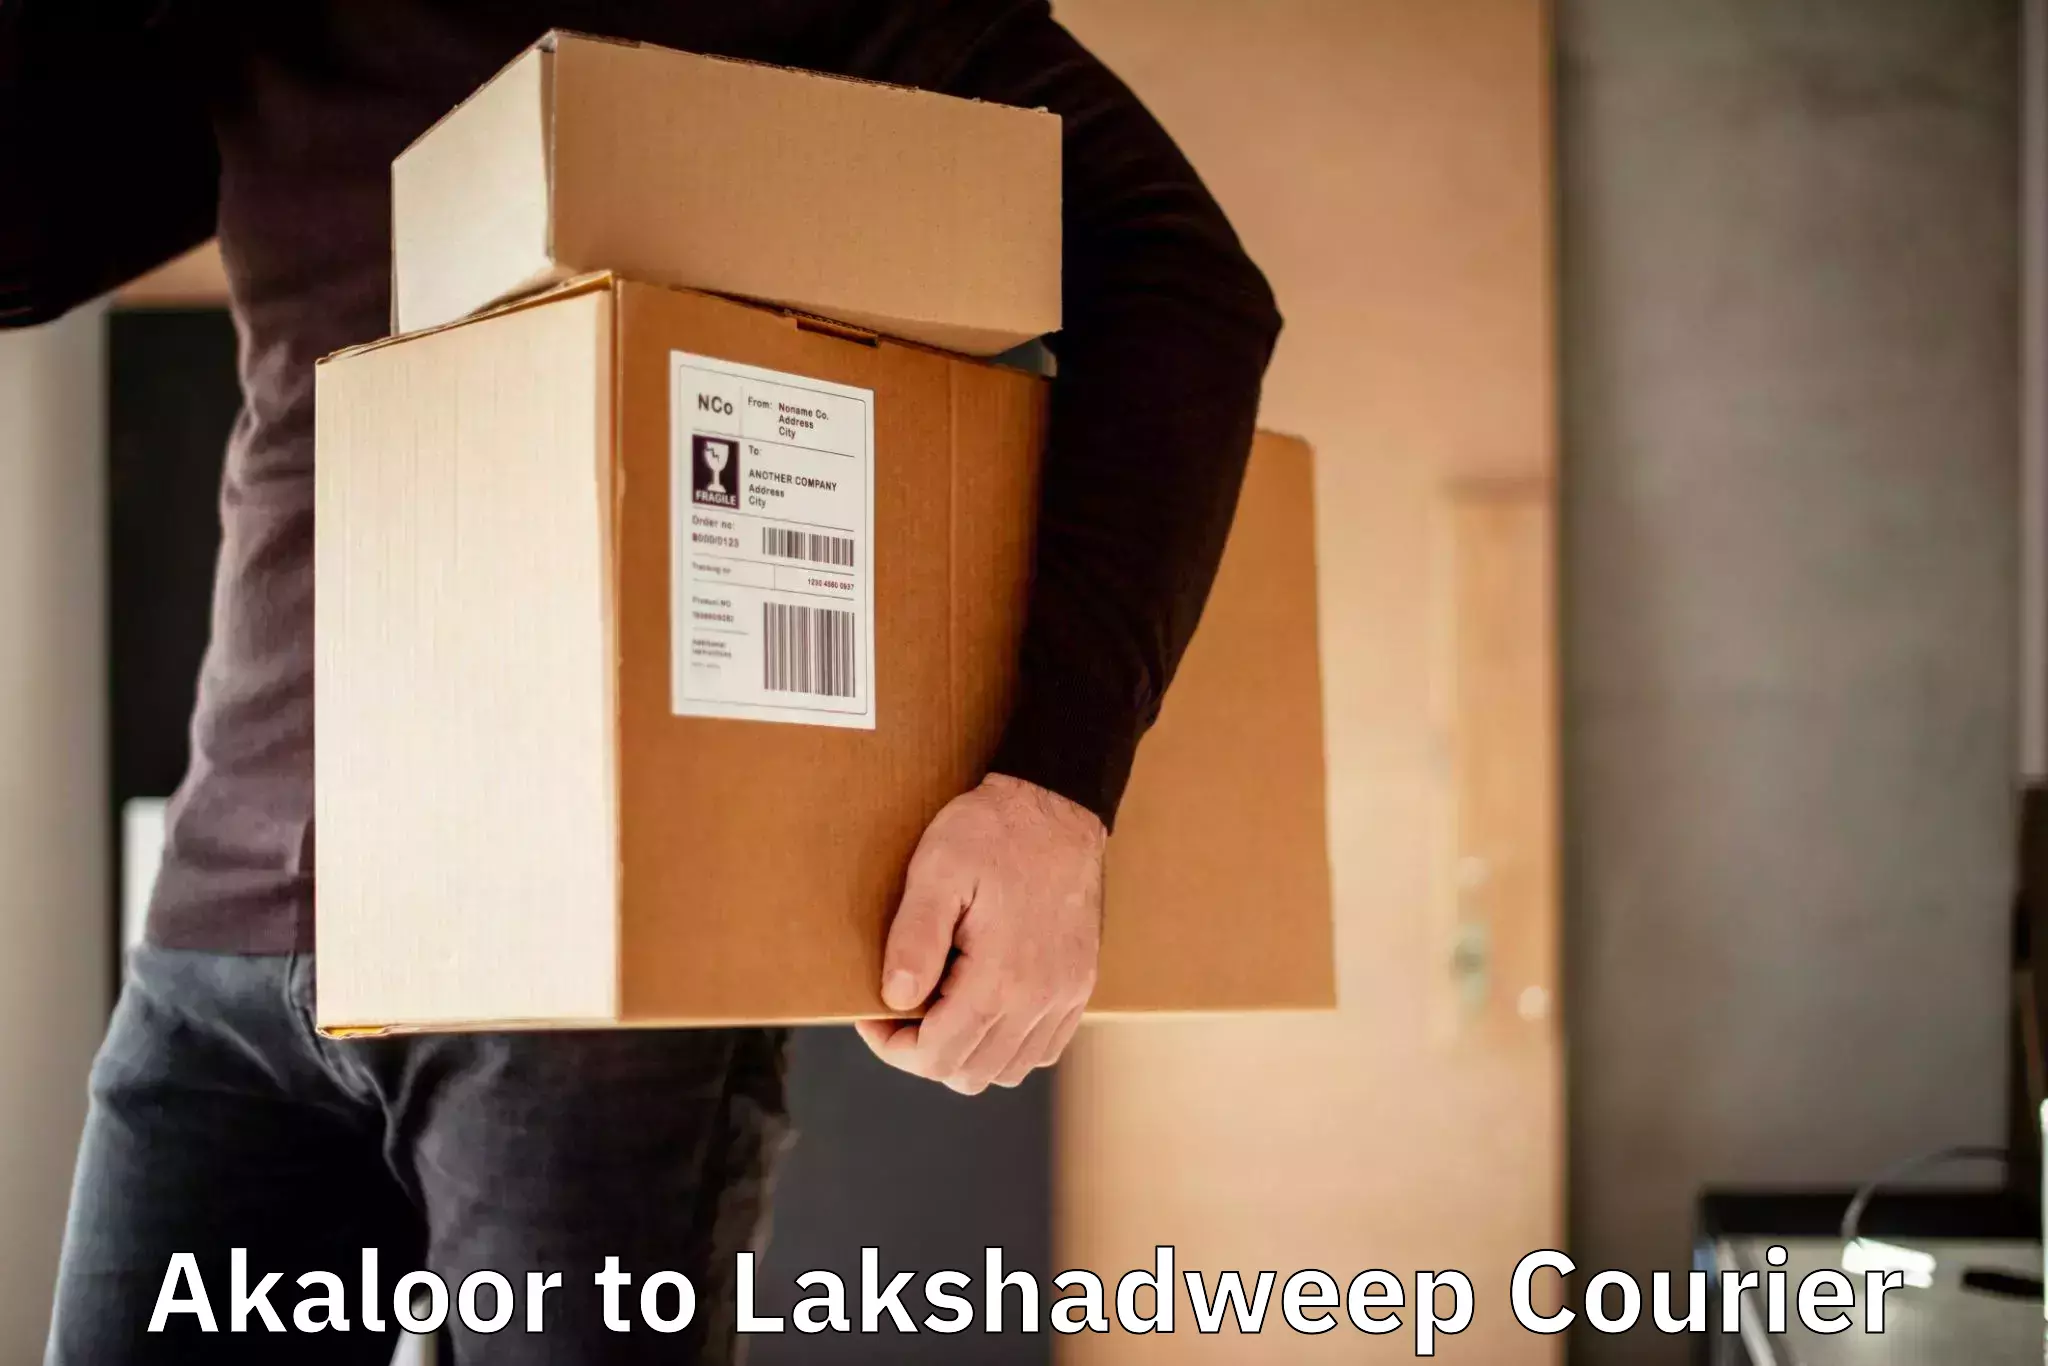 Global parcel delivery Akaloor to Lakshadweep